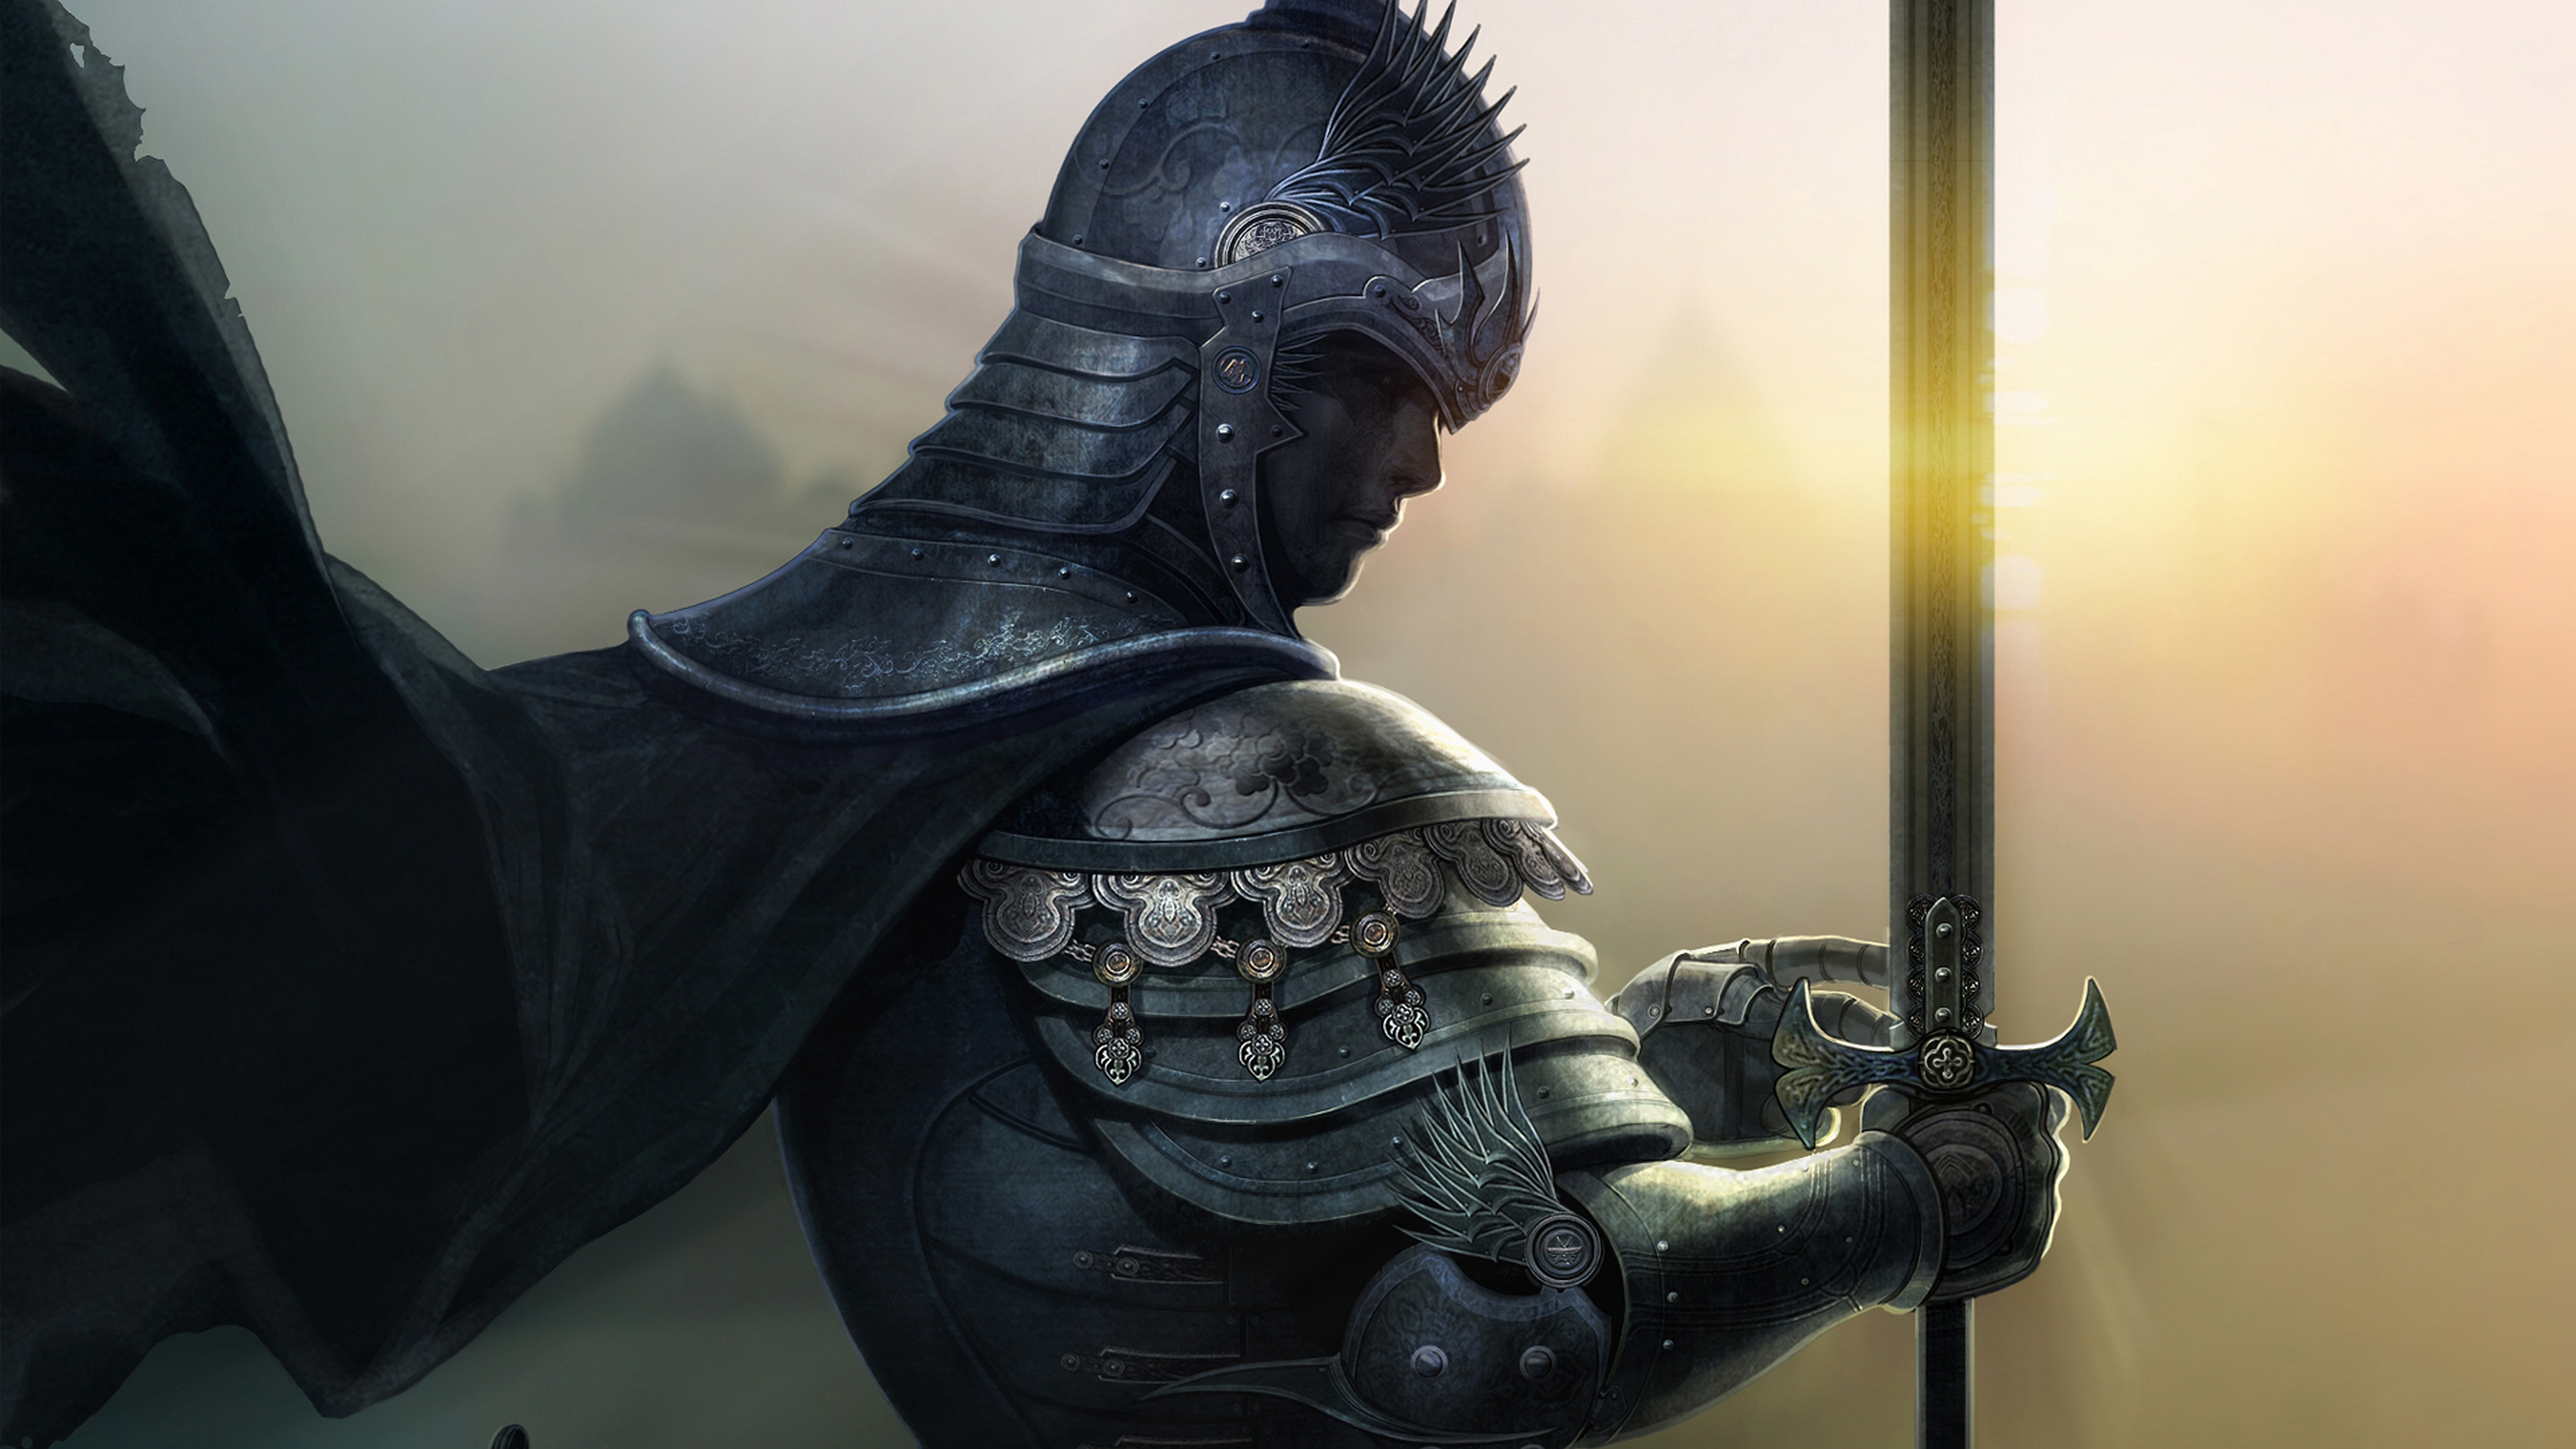 Warrior's Glory - 4K HD desktop wallpaper of a fierce fantasy knight.